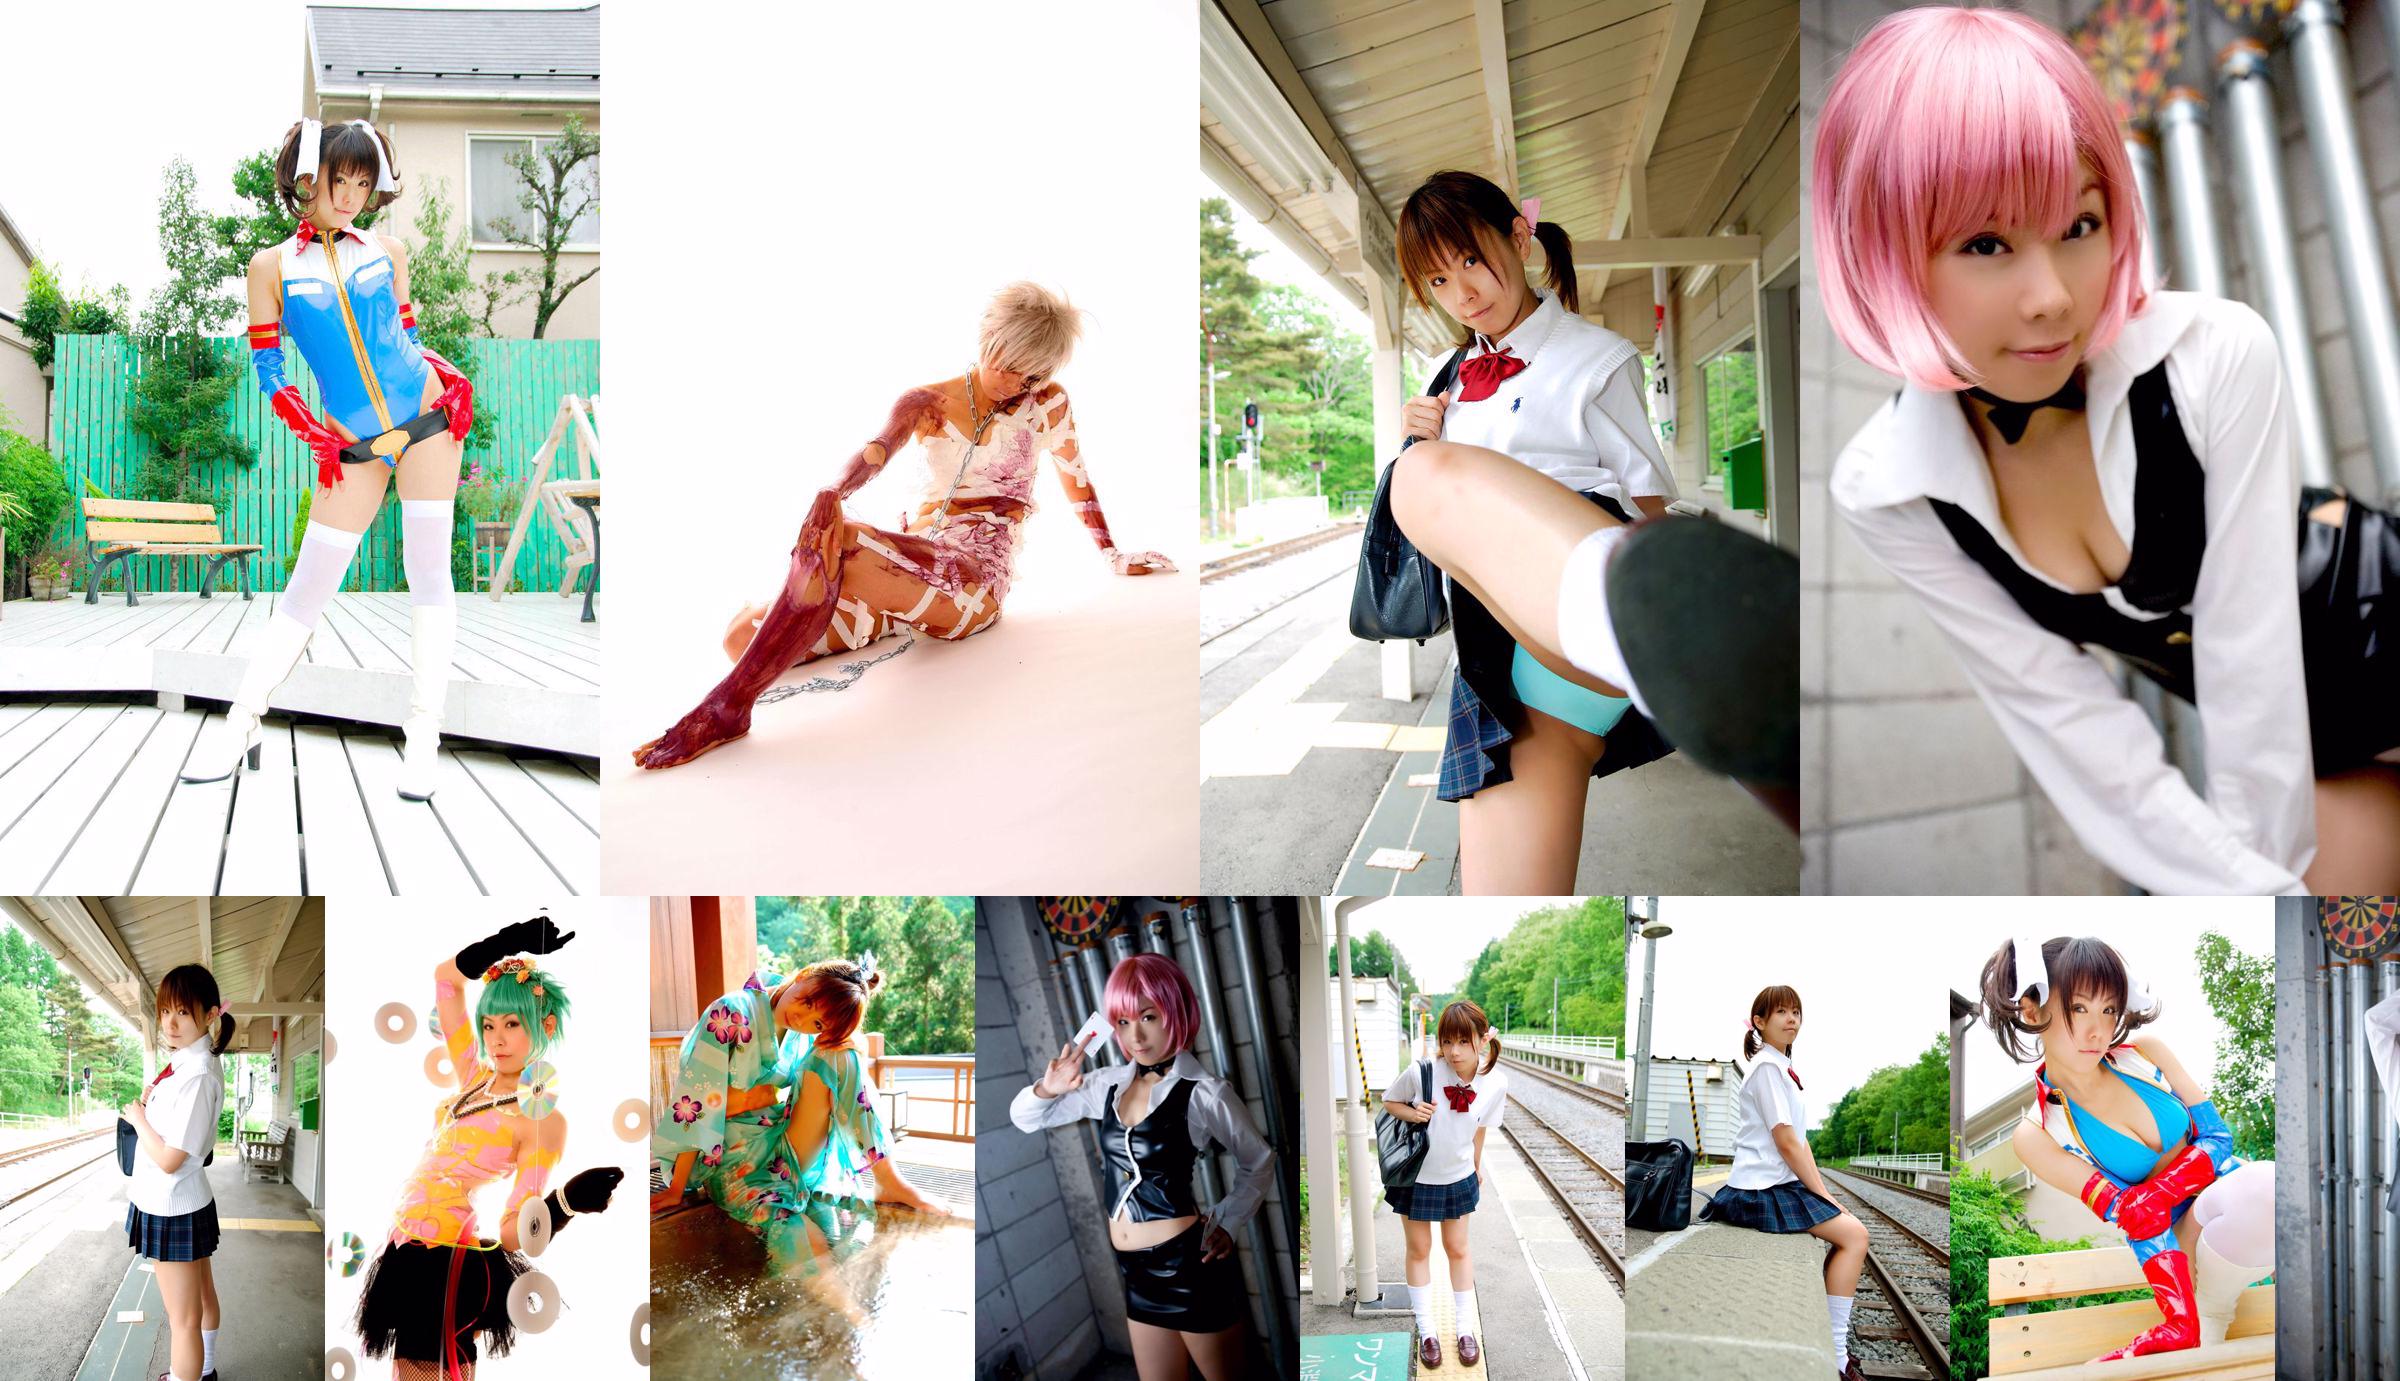 Tachibana Minami (Tachibana Minami) Set de fotos 4 en 1 No.03b80e Página 1